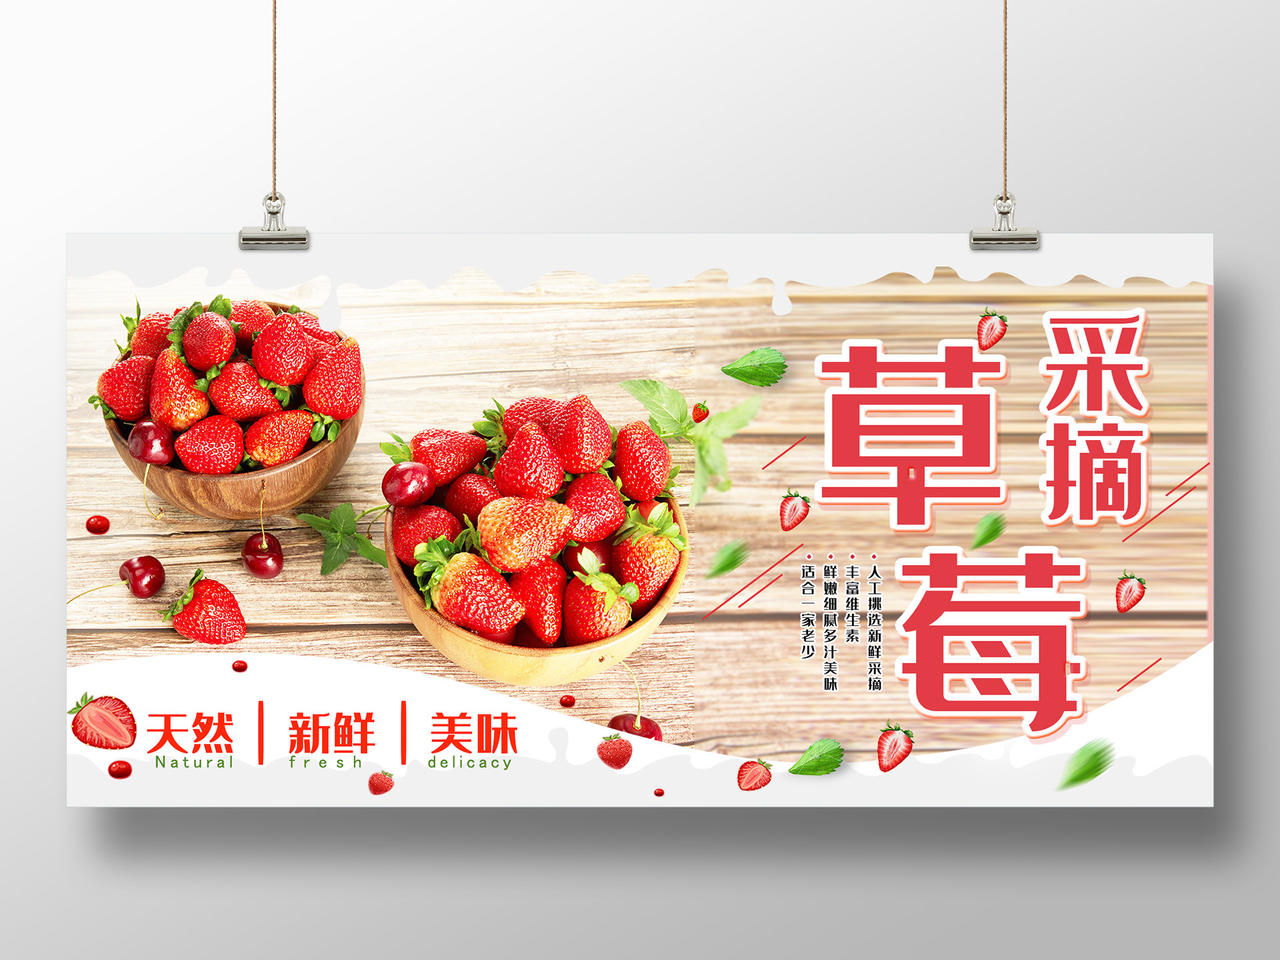 浅色简约新鲜天然草莓采摘水果展板生鲜水果摘草莓模板设计